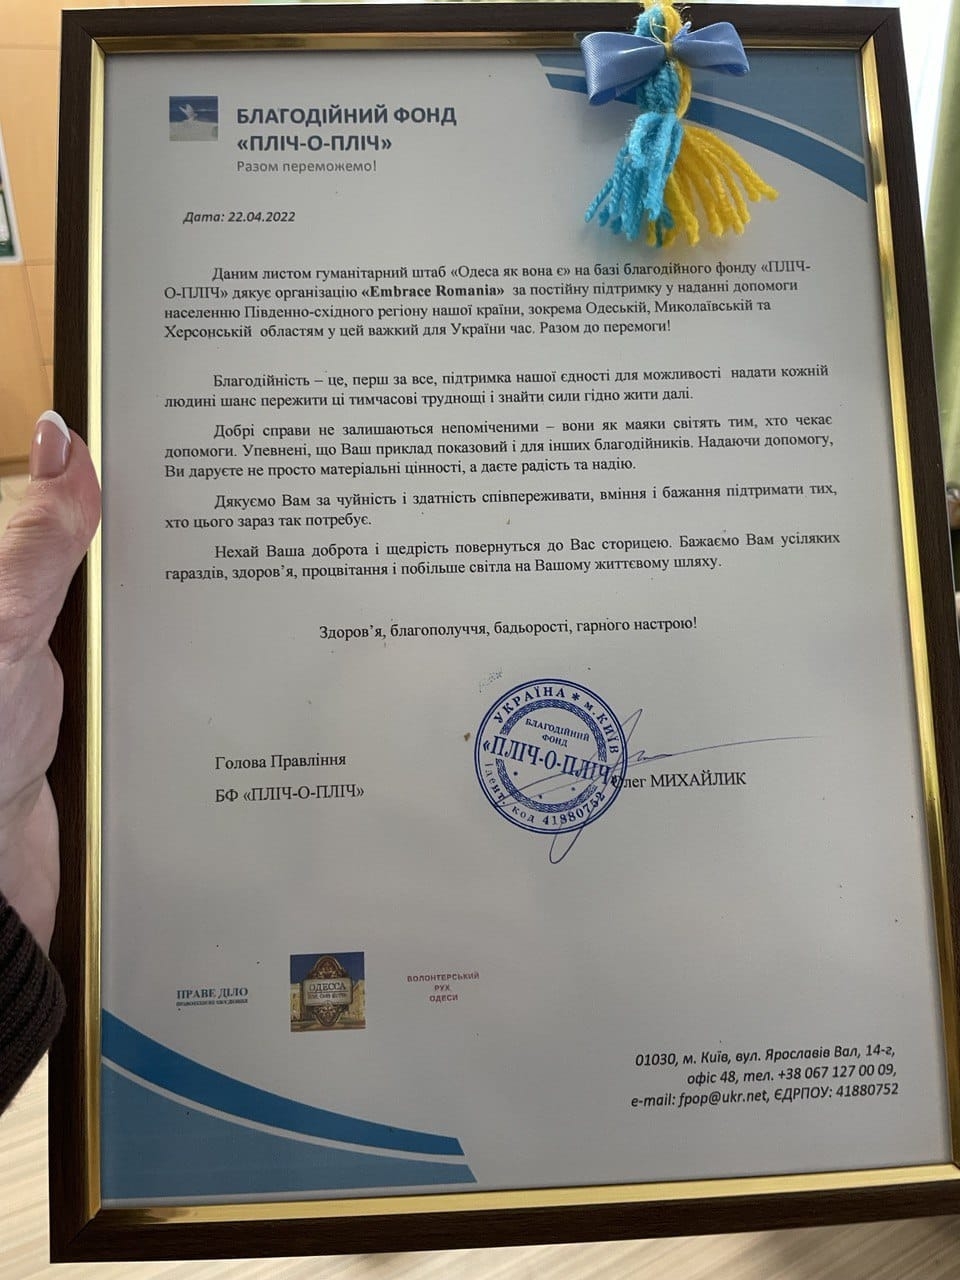 Un ONG din Odessa apreciază Embrace România